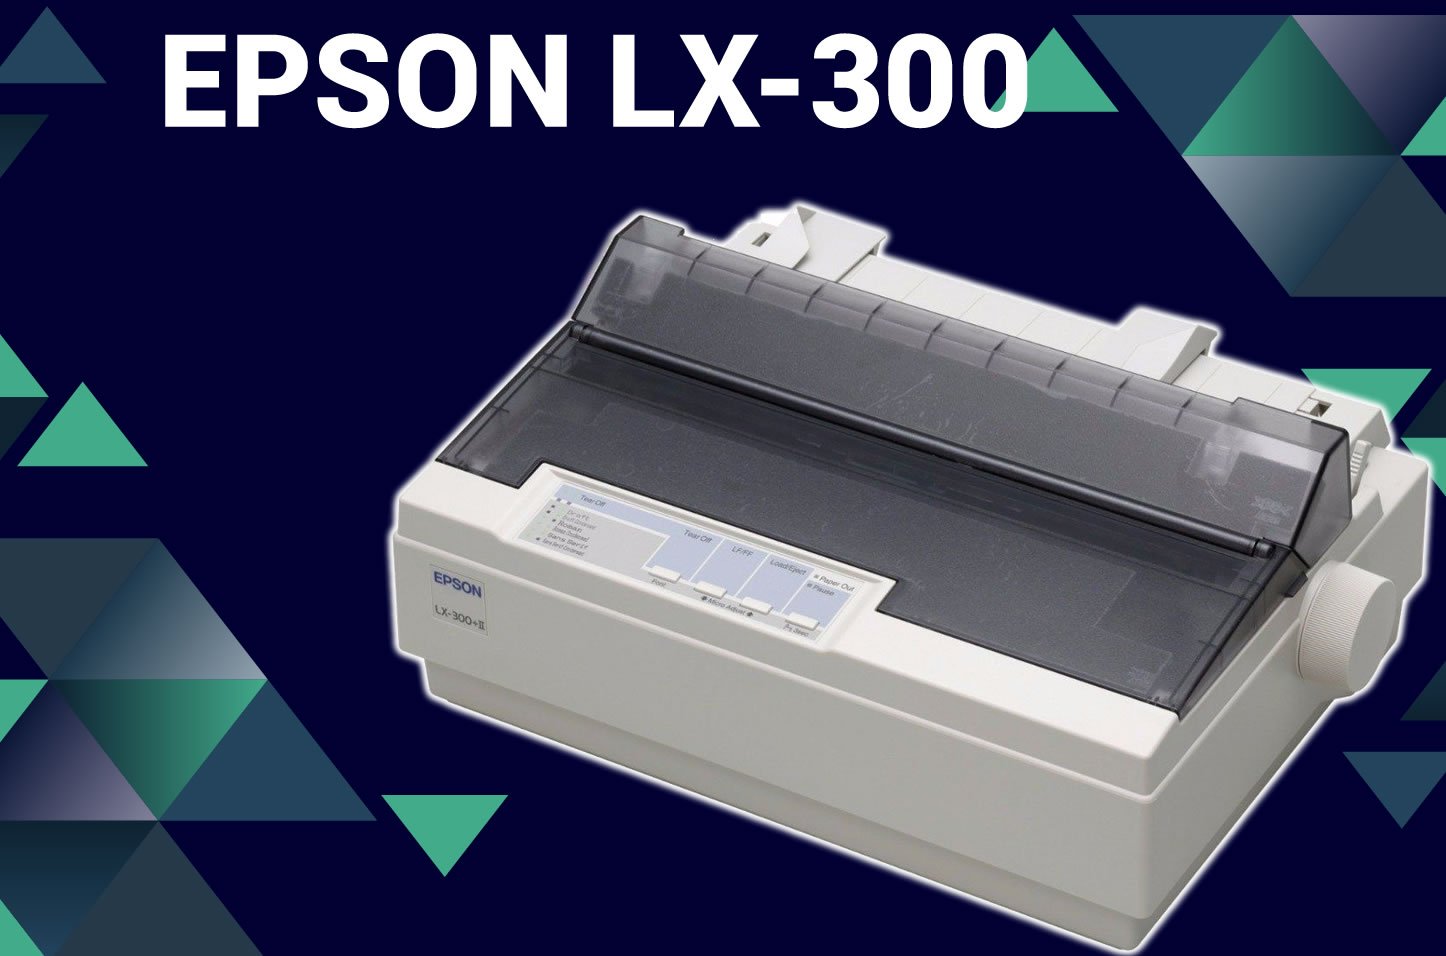 COMO INSTALAR A IMPRESSORA EPSON LX300 - instalação passo a passo - Driver - Impressora POS -  VE Software 